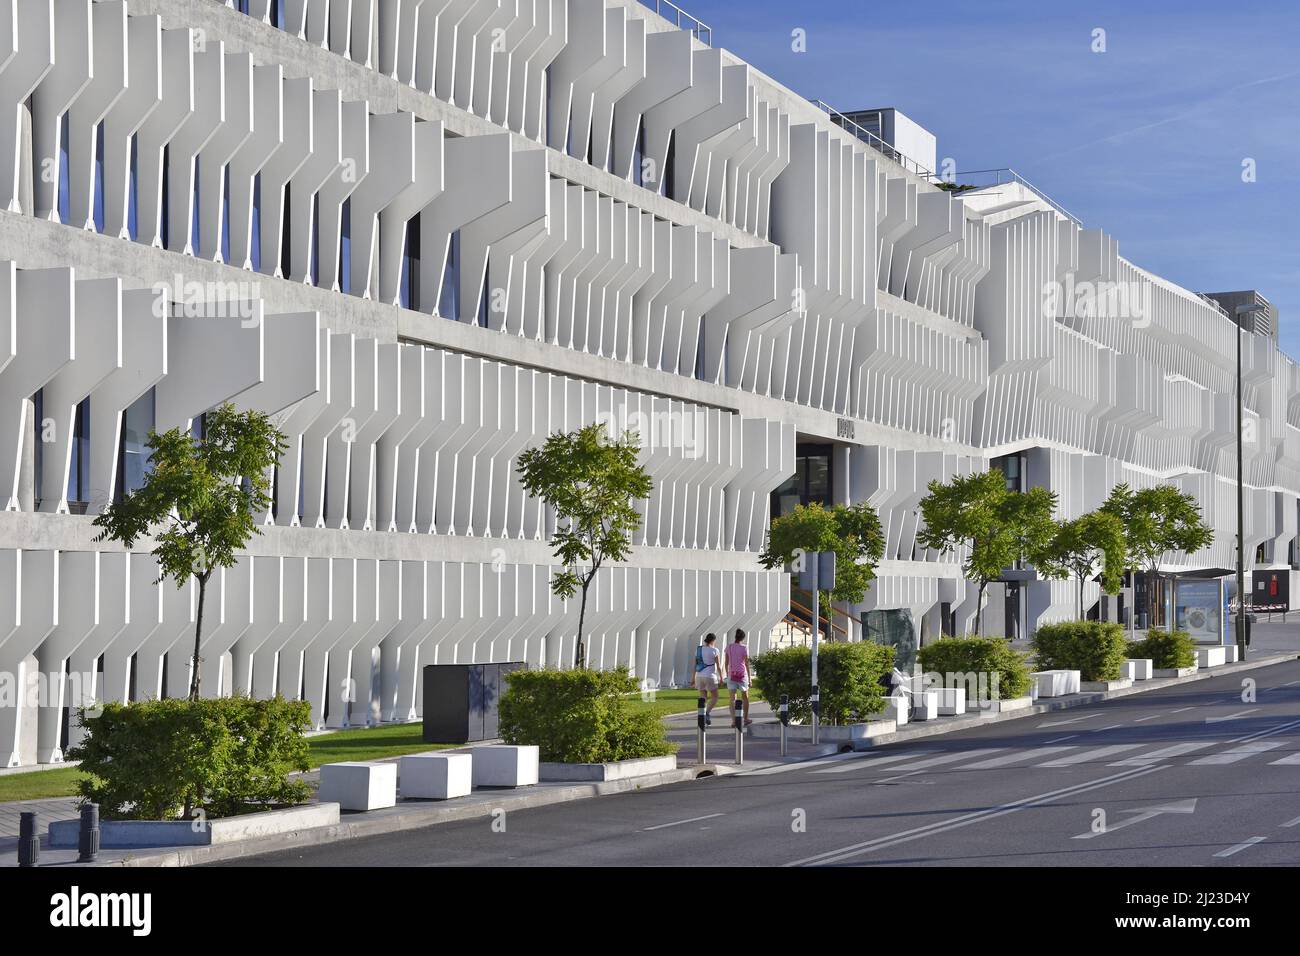 BBVA Bank Head Office, modernes Gebäude Außenfassade mit Brise-soleils ( Sonnenschutz), entworfen von Herzog und de Meuron Architekten in Madrid  Spanien Stockfotografie - Alamy